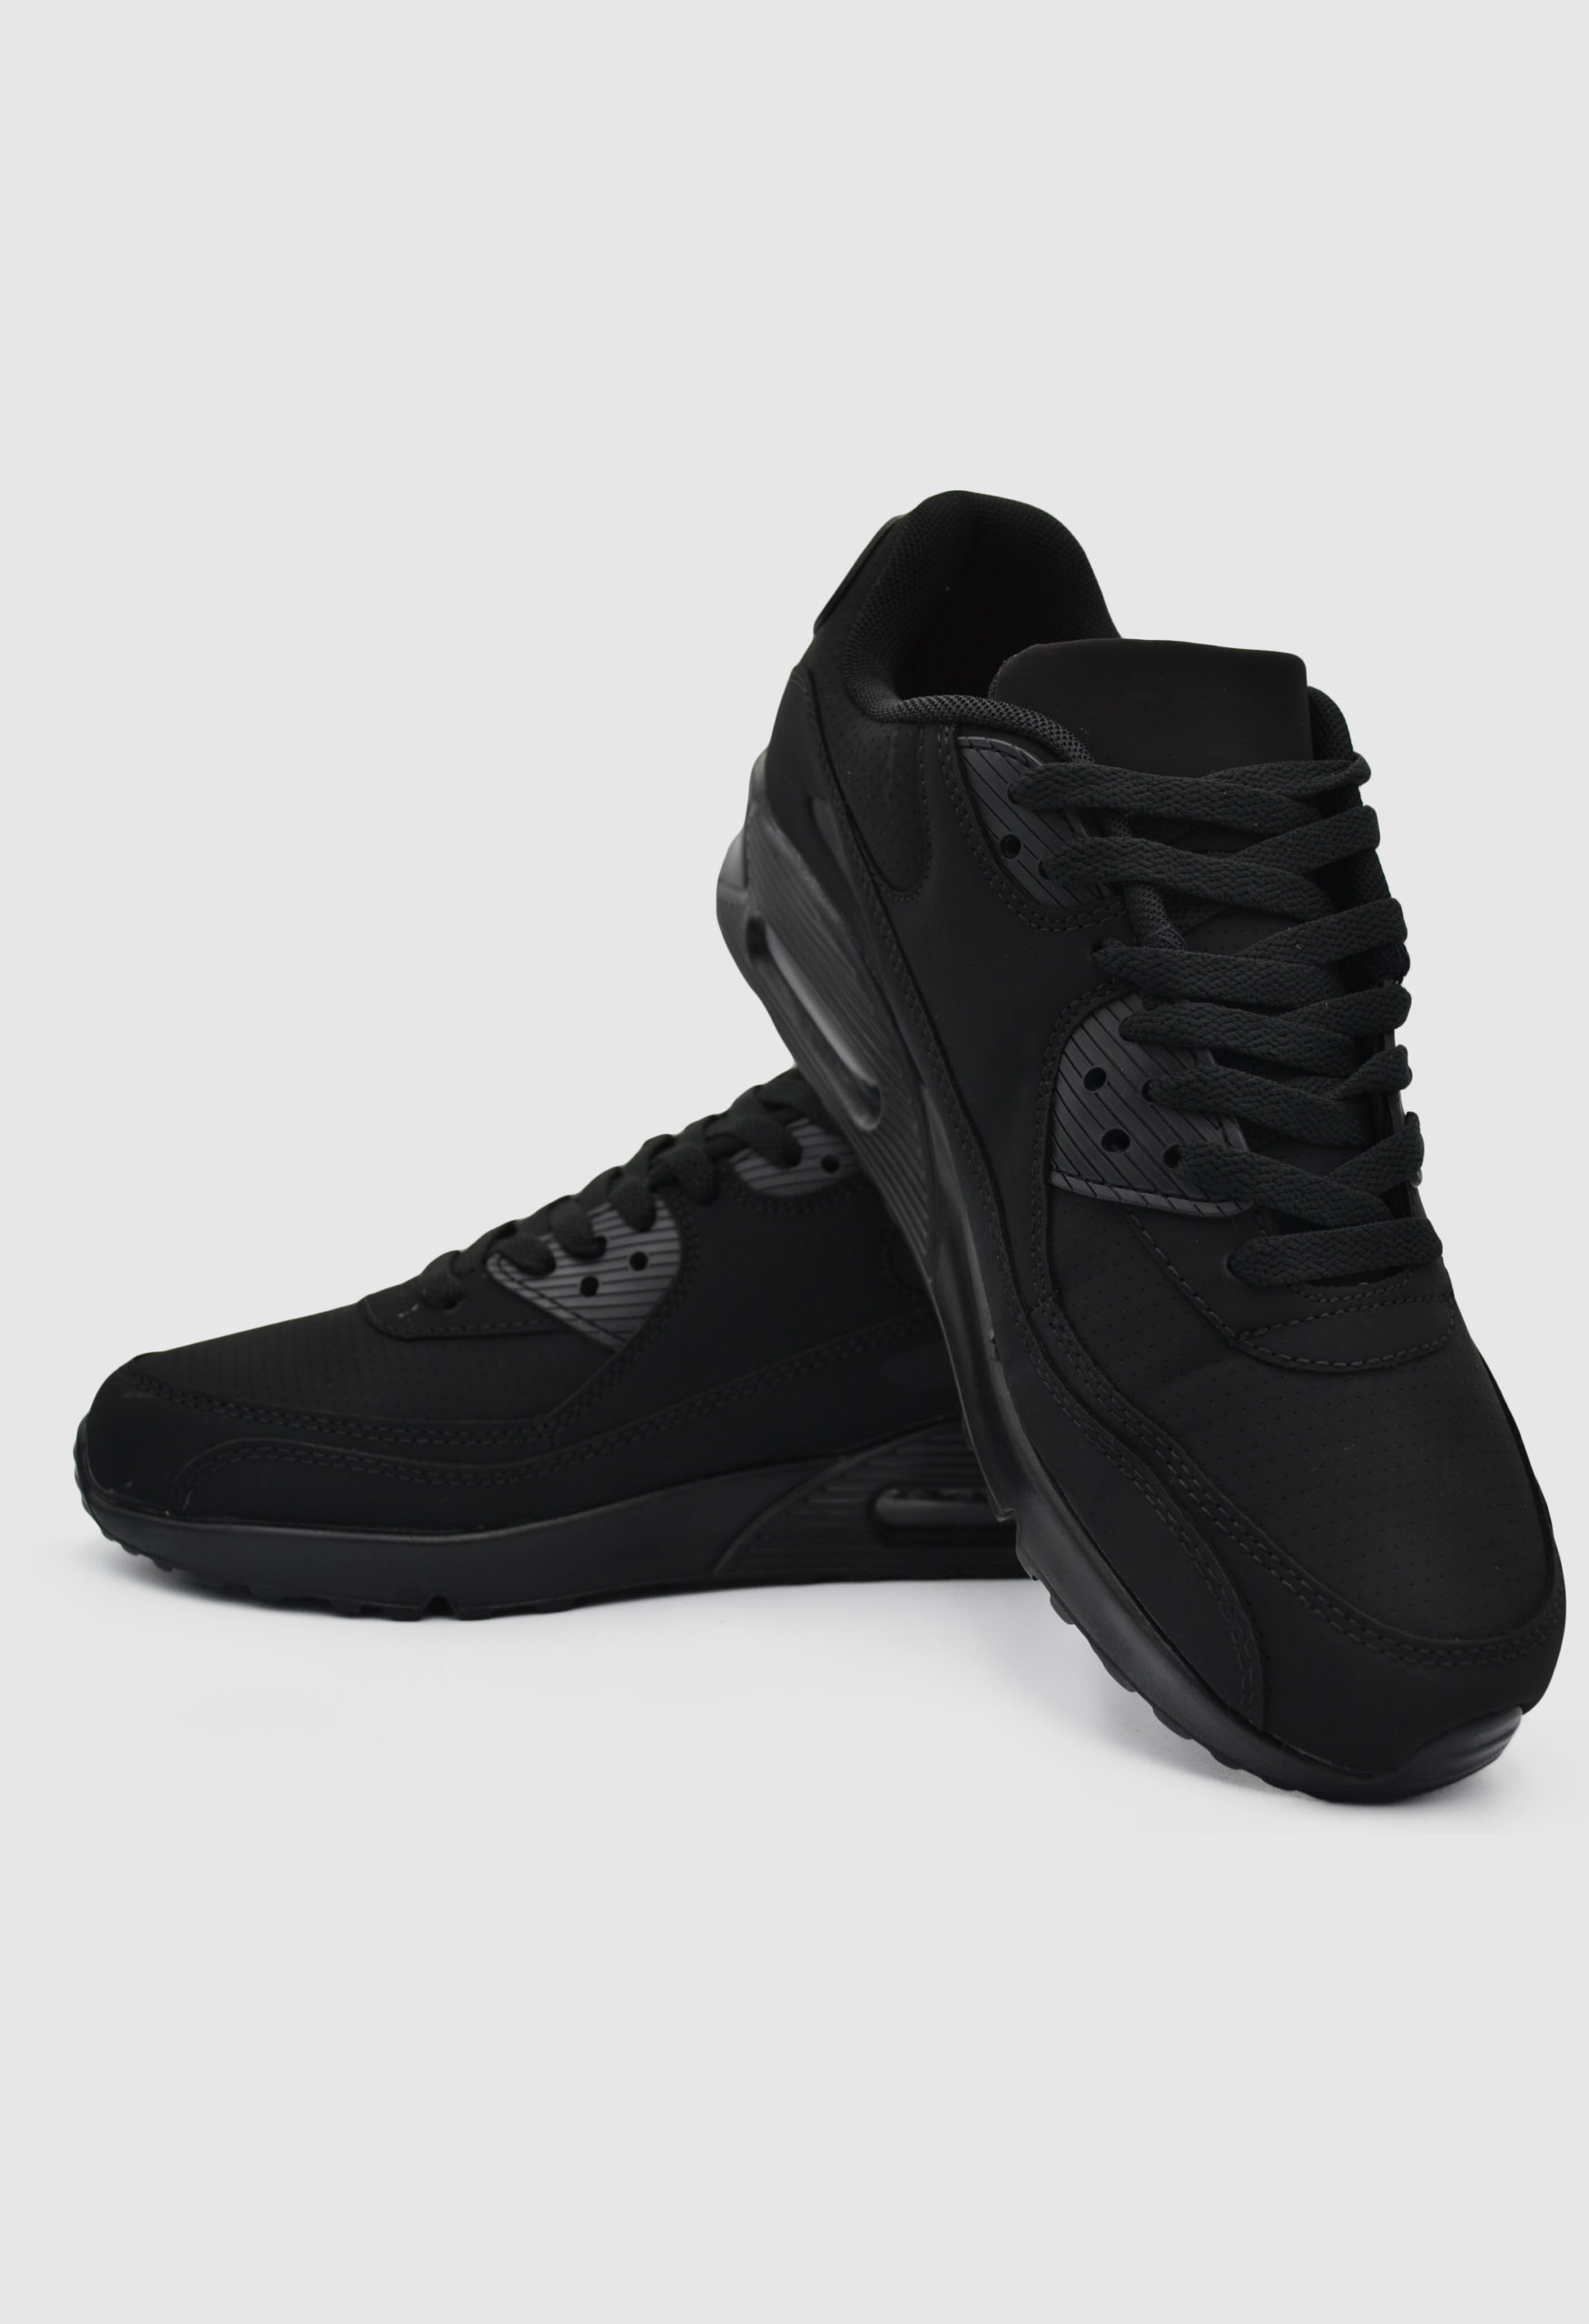 Ανδρικά Sneakers Μαύρο / 6744497 ΑΘΛΗΤΙΚΑ & SNEAKERS joya.gr